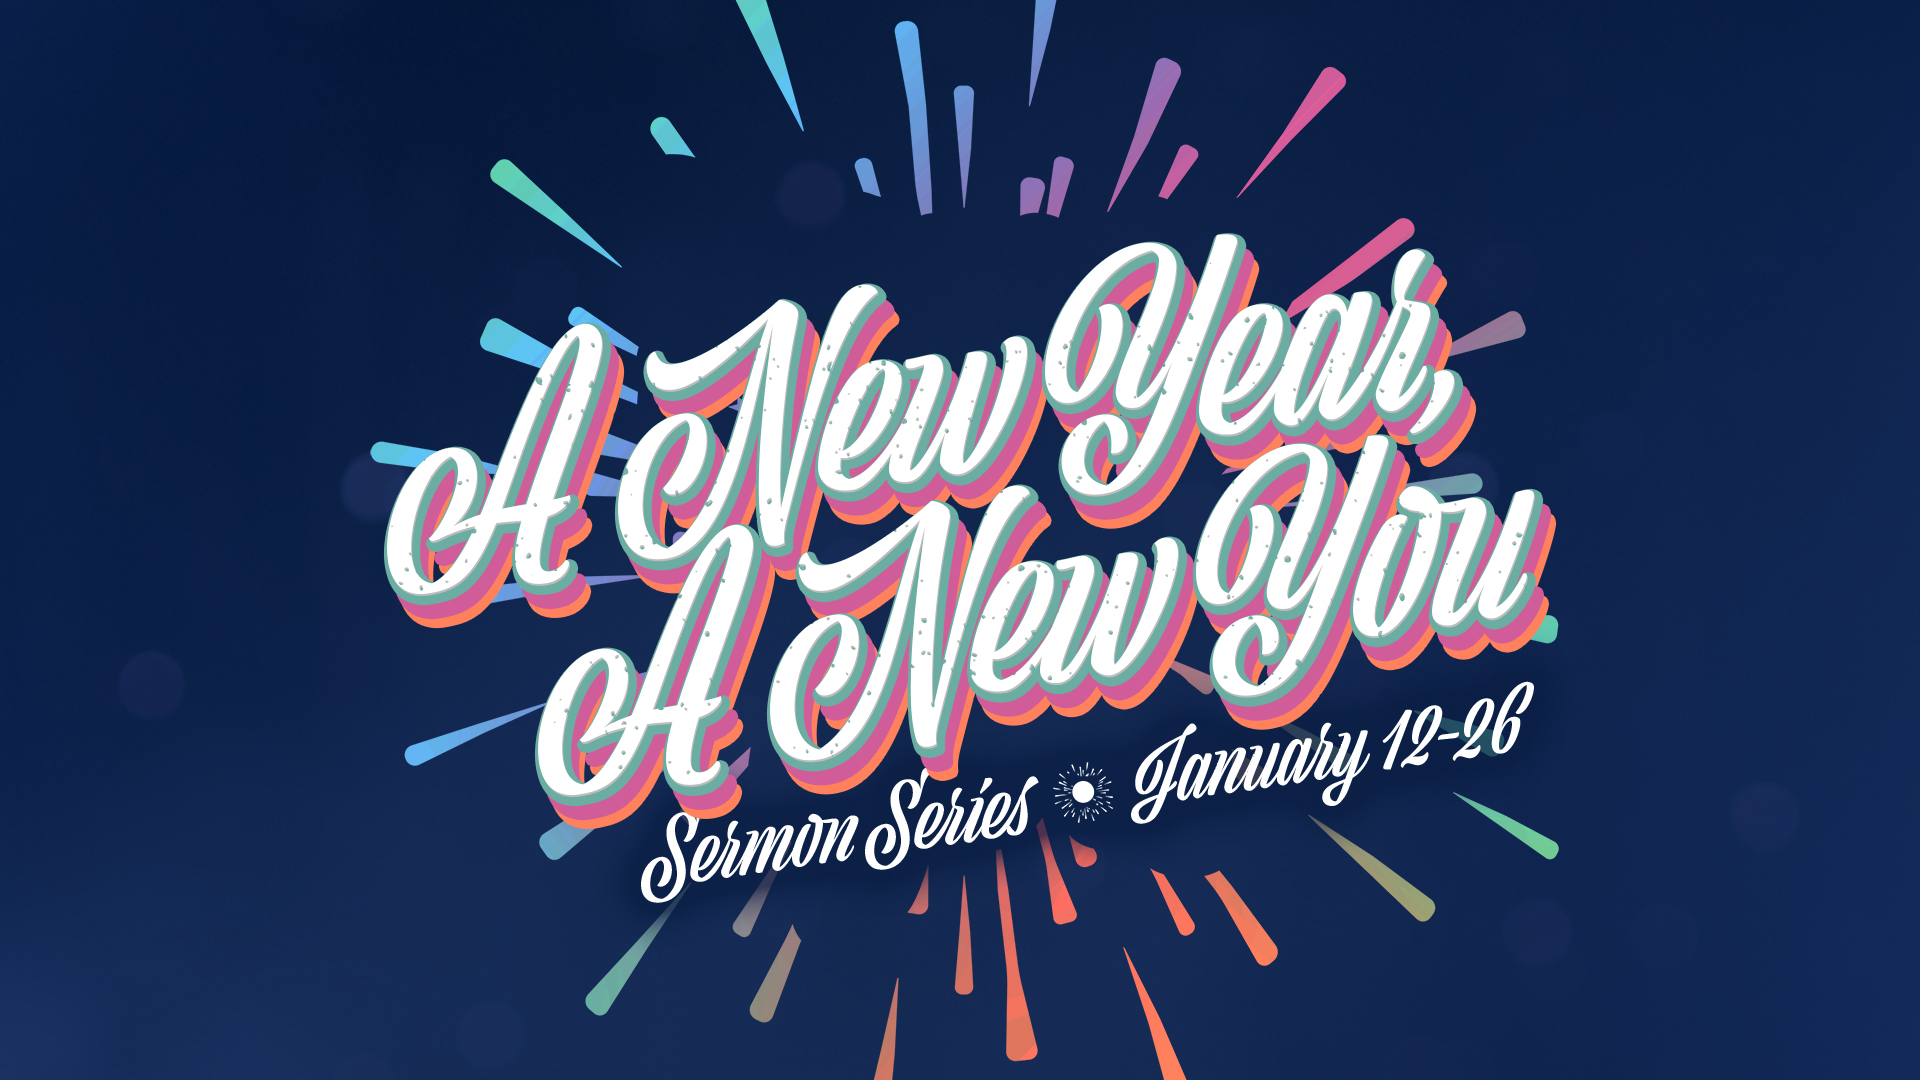 “A New Year, A New You” Sermon Series – Asbury United Methodist Church